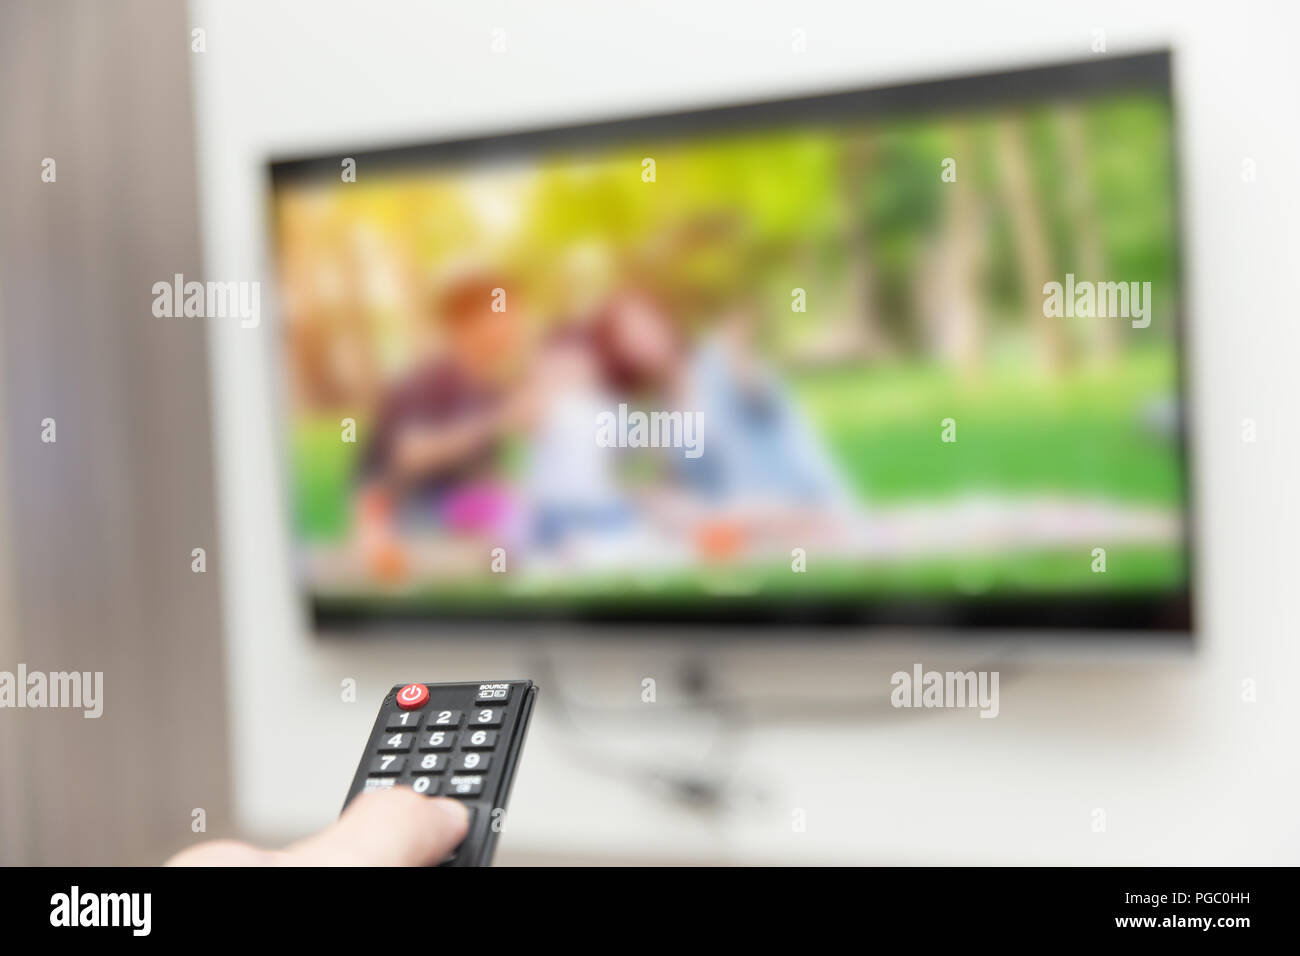 La gente está viendo la televisión con mando a distancia de televisión inteligente Foto de stock